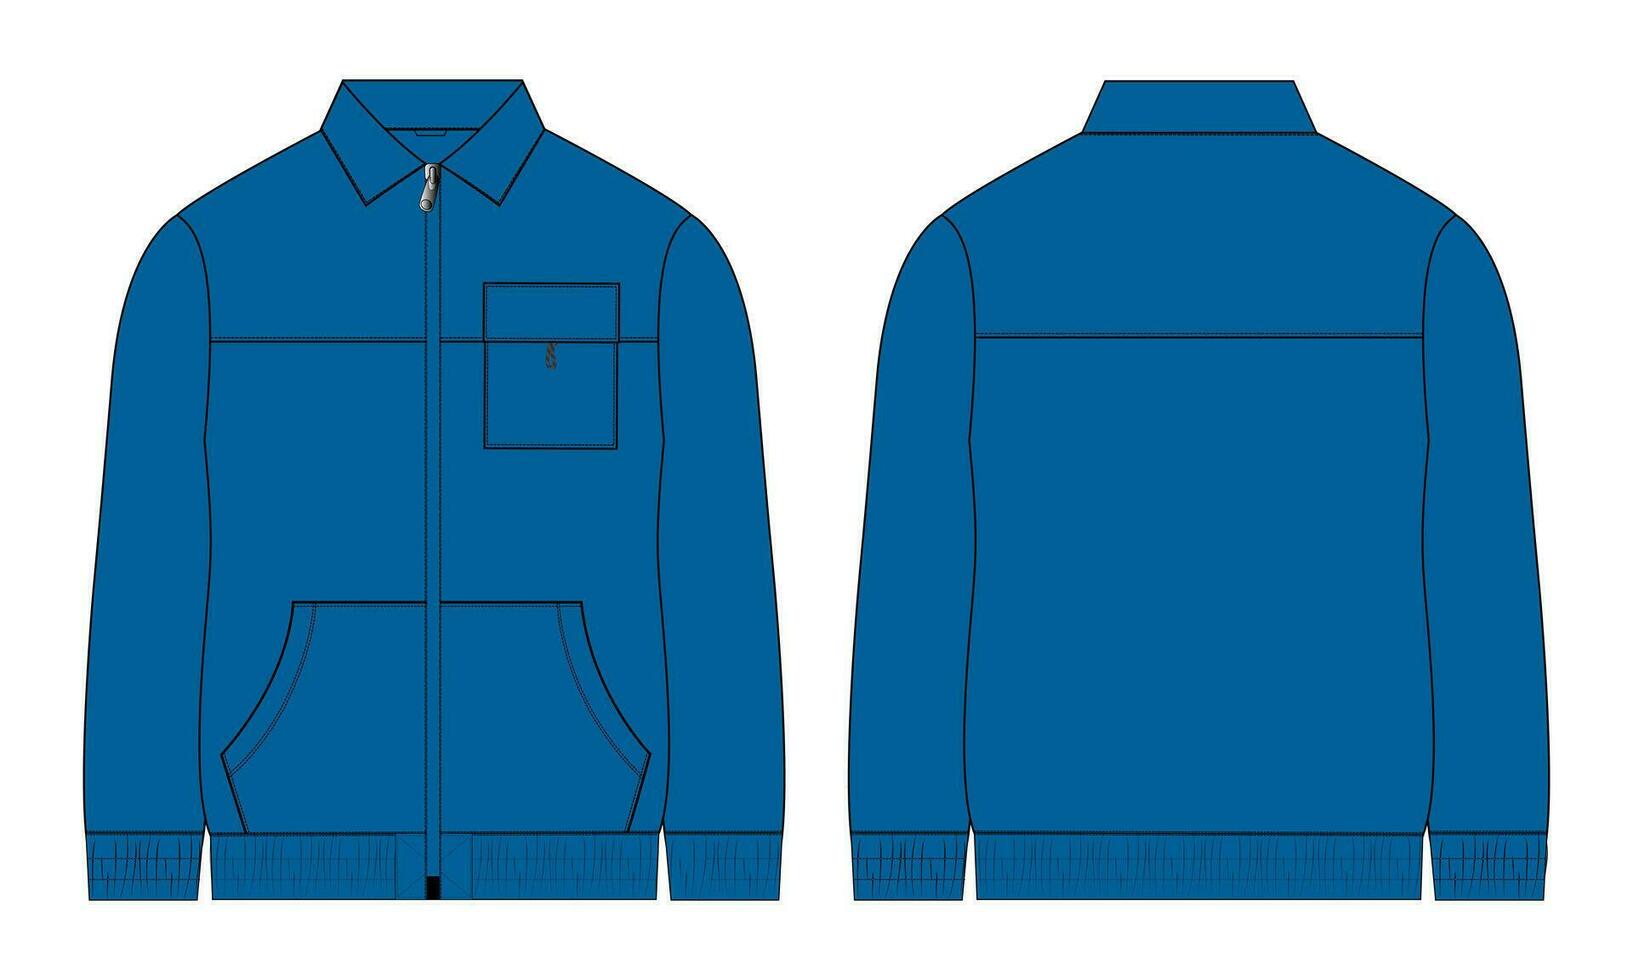 lang mouw rits met zak- trainingspakken jasje sweater technisch mode vlak schetsen vector illustratie sjabloon voorkant en terug visie.